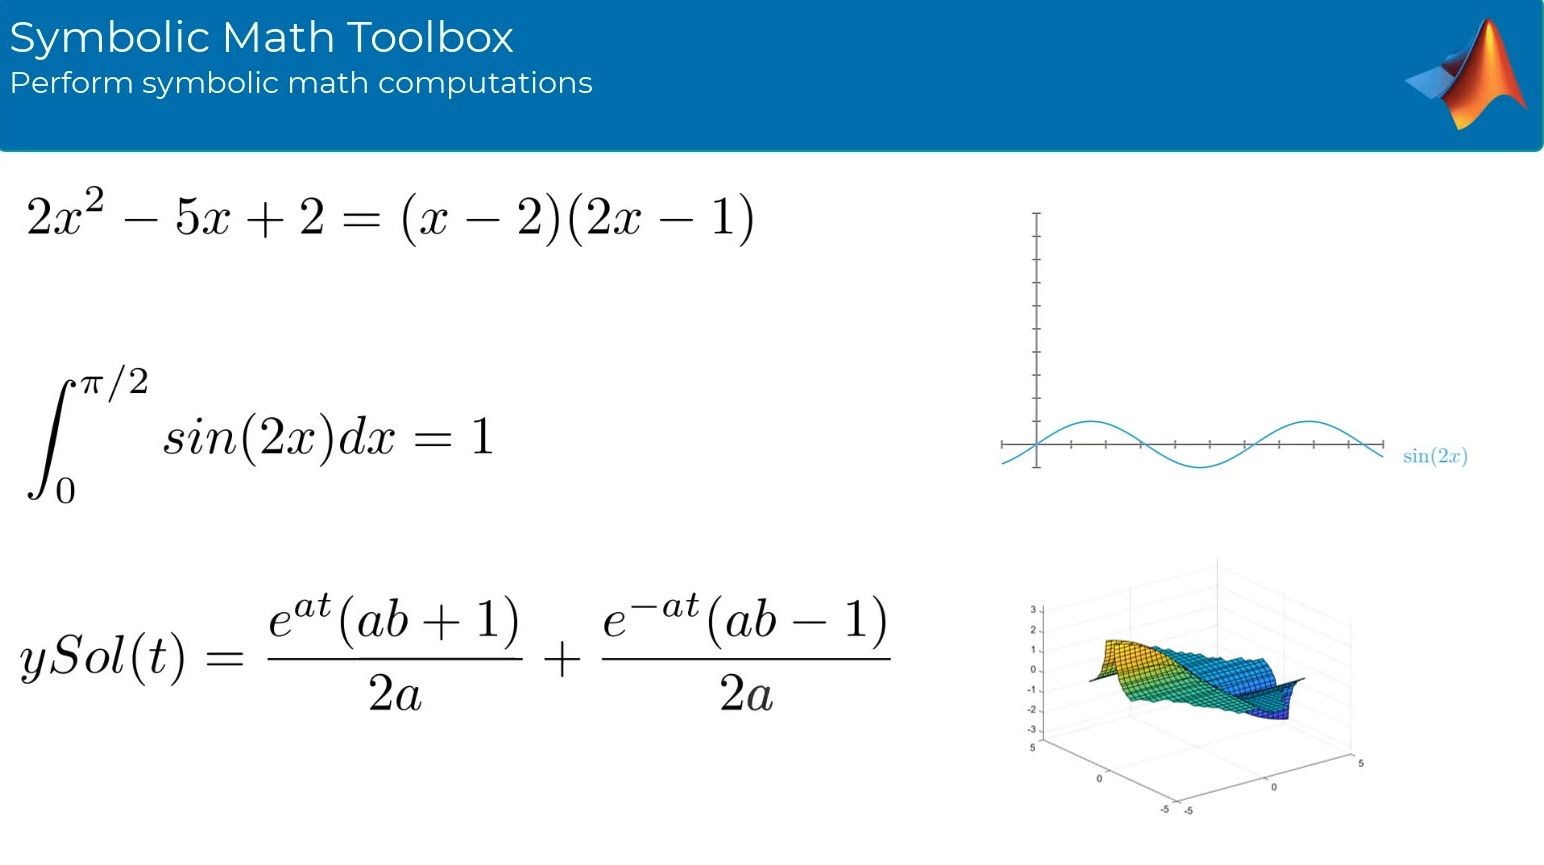 使用符号数学工具箱执行符号数学计算™. 工具箱提供用于求解、绘制和操作符号数学方程的函数。